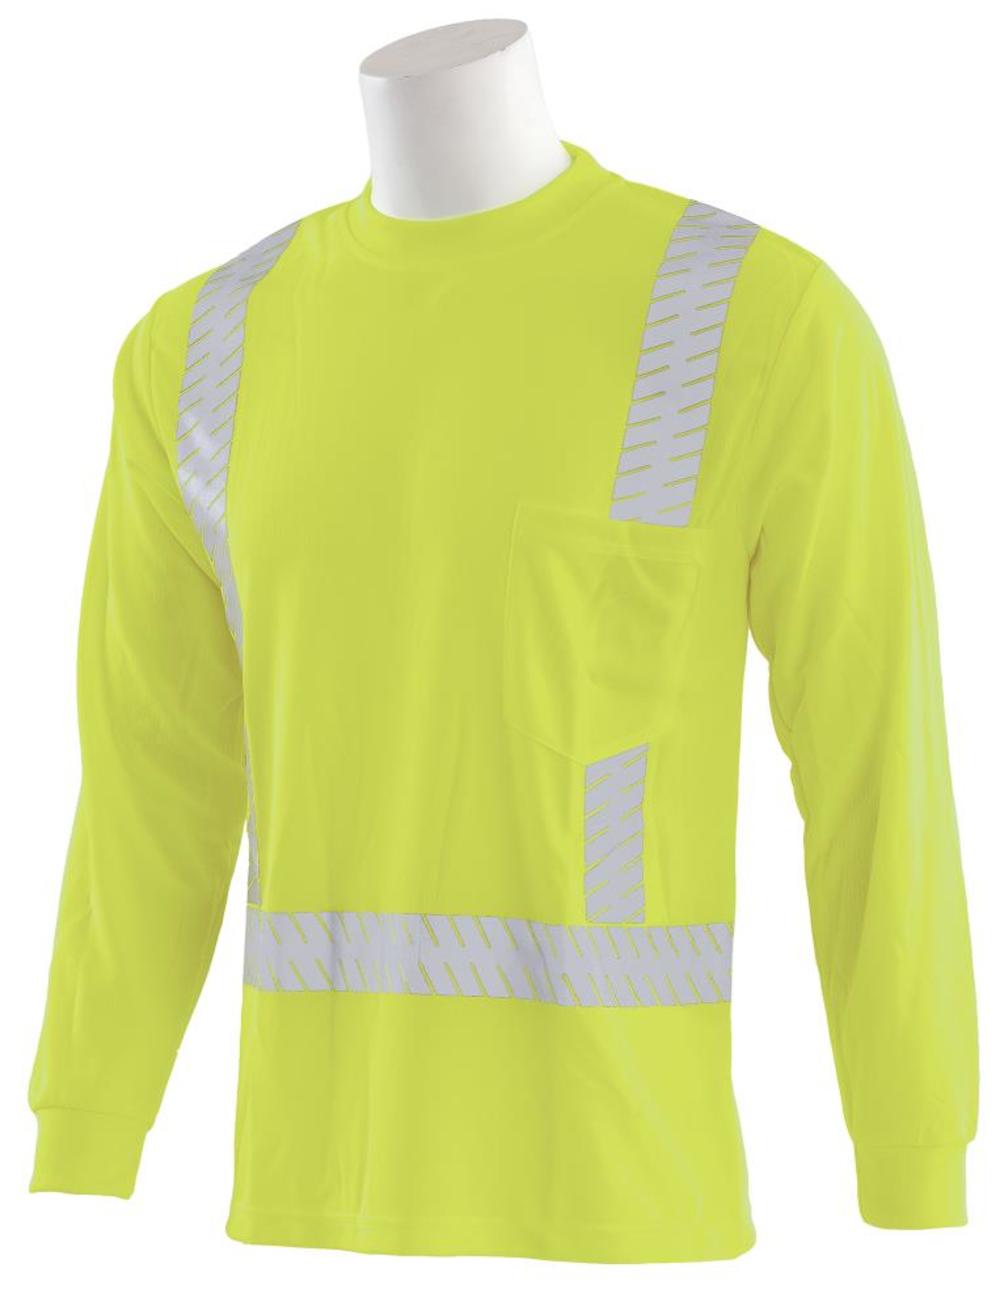 

ERB 9007SEG Mesh Long Sleeve Hi-Viz Lime Class 2 T-Shirt MD